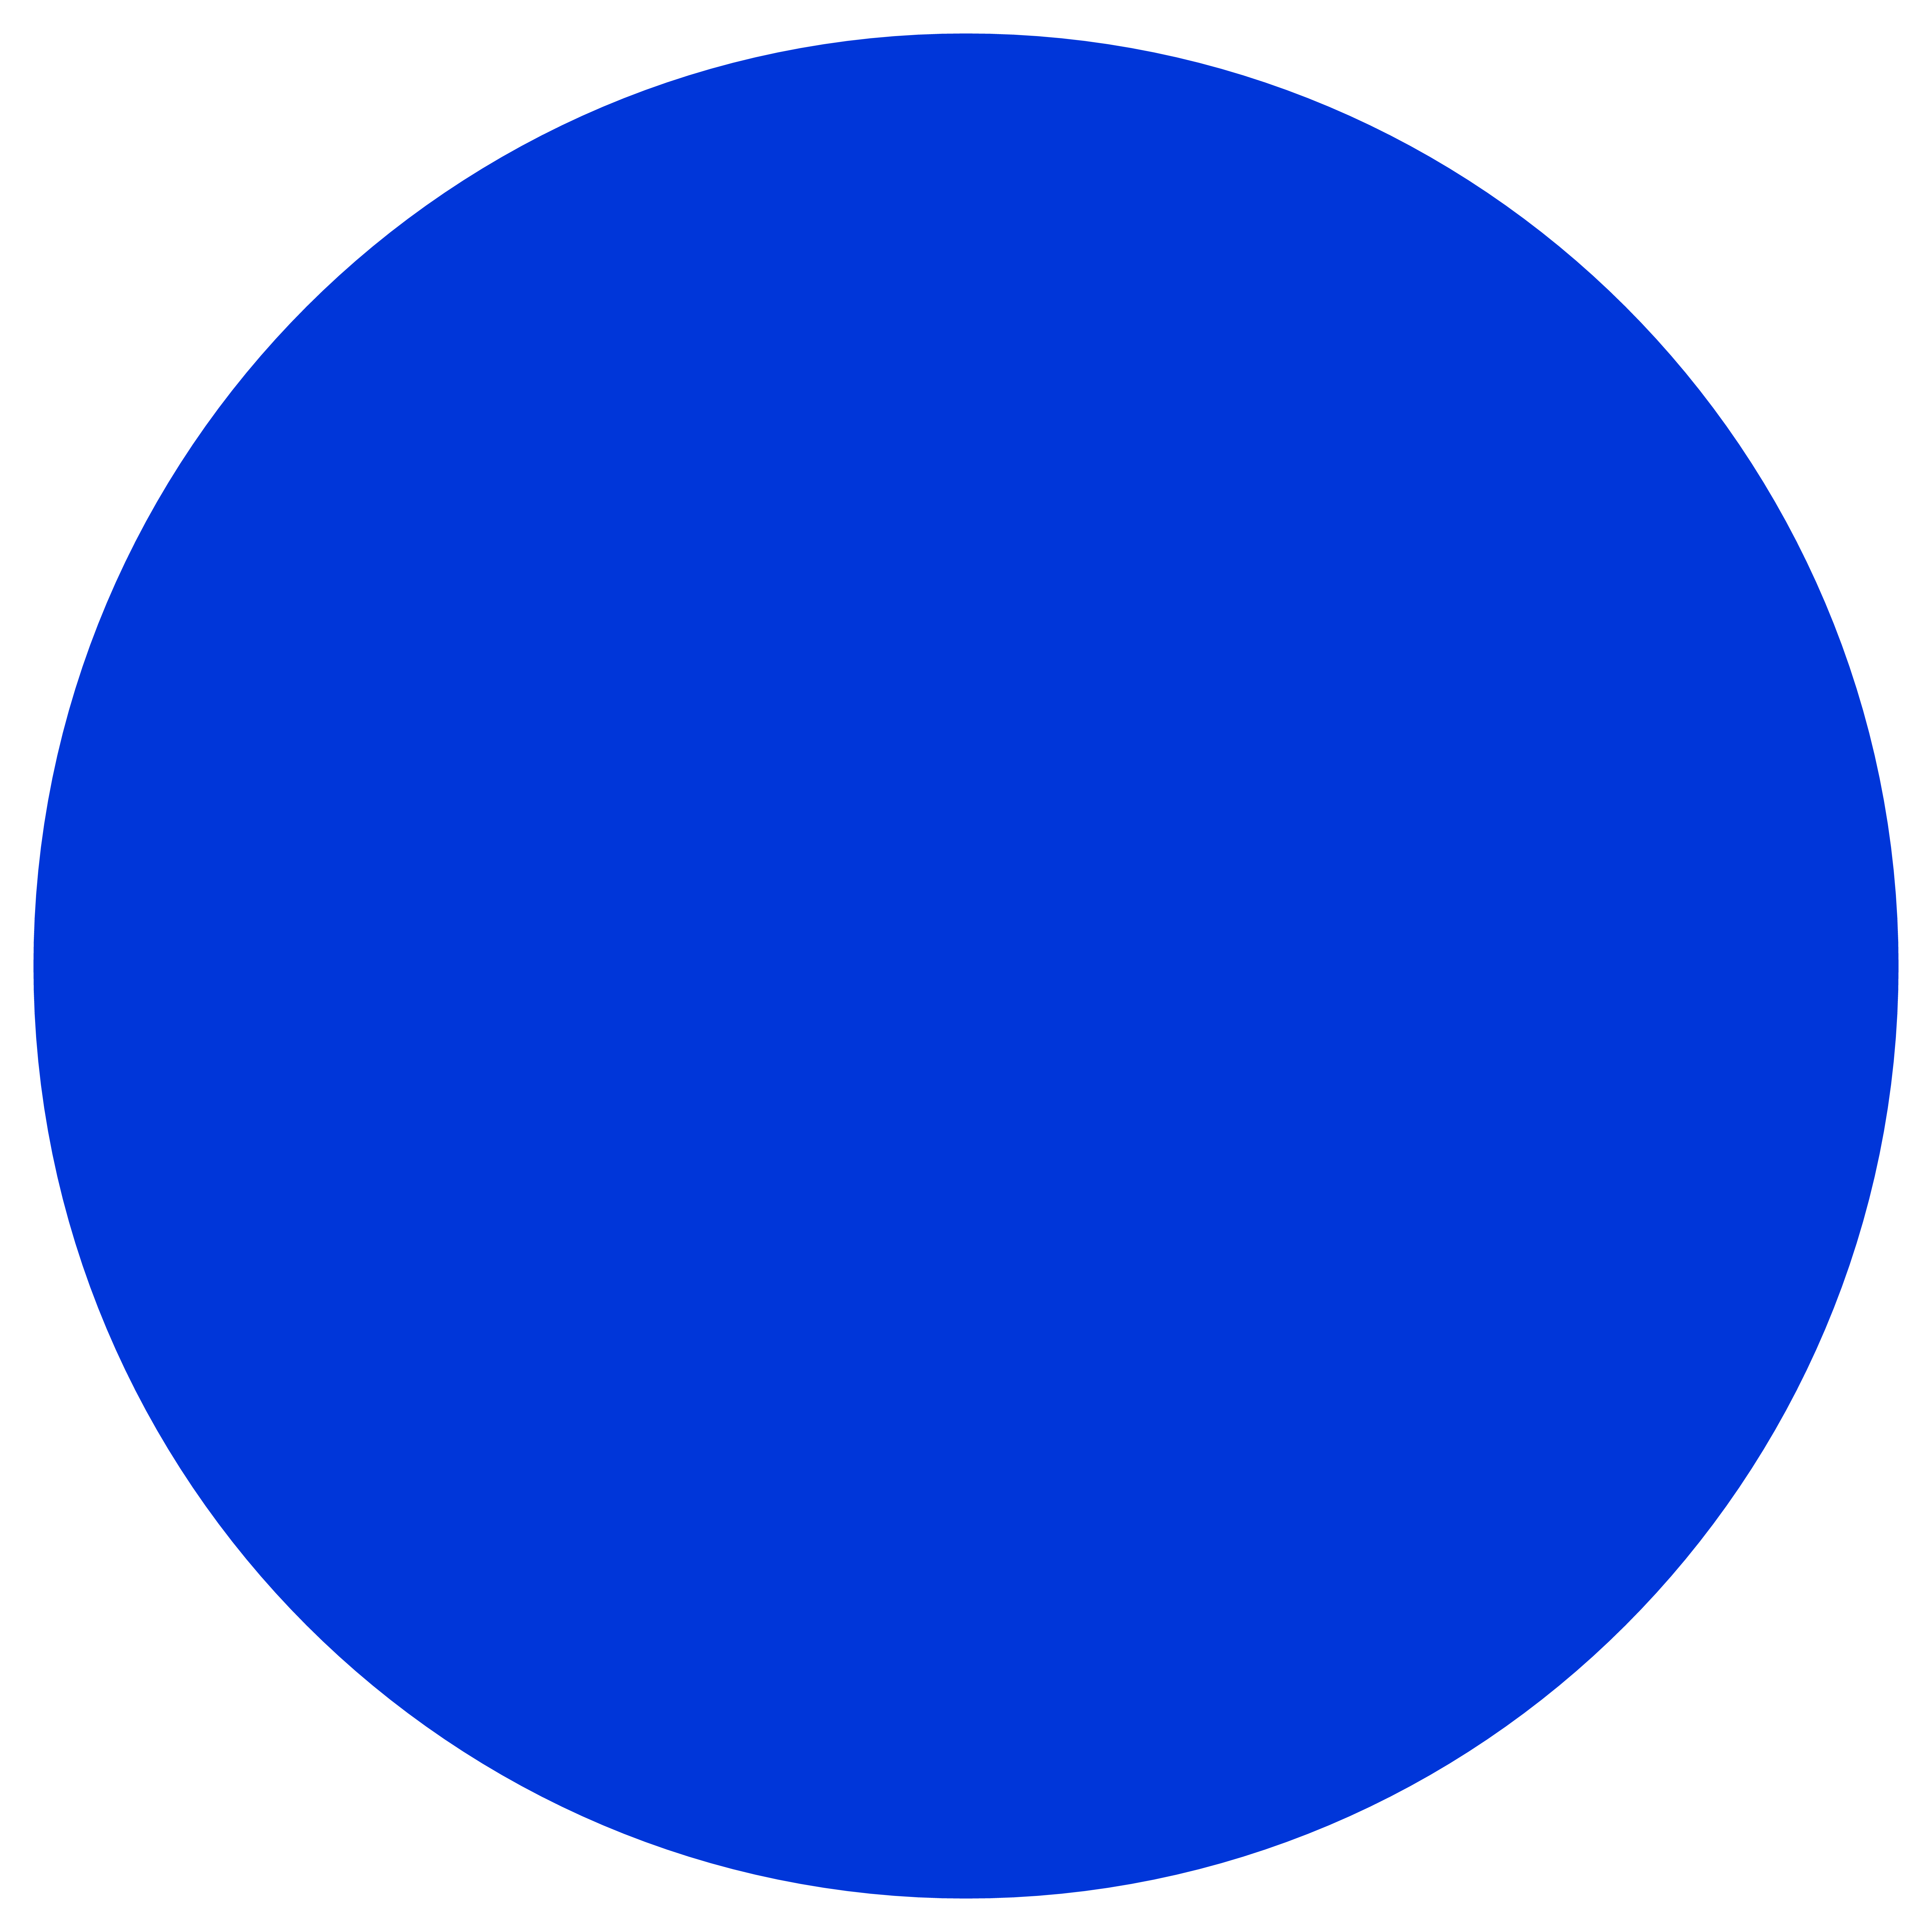 Круг ти. Синий кружок. Голубой круг. Синий круг на прозрачном фоне. Синие кружочки.